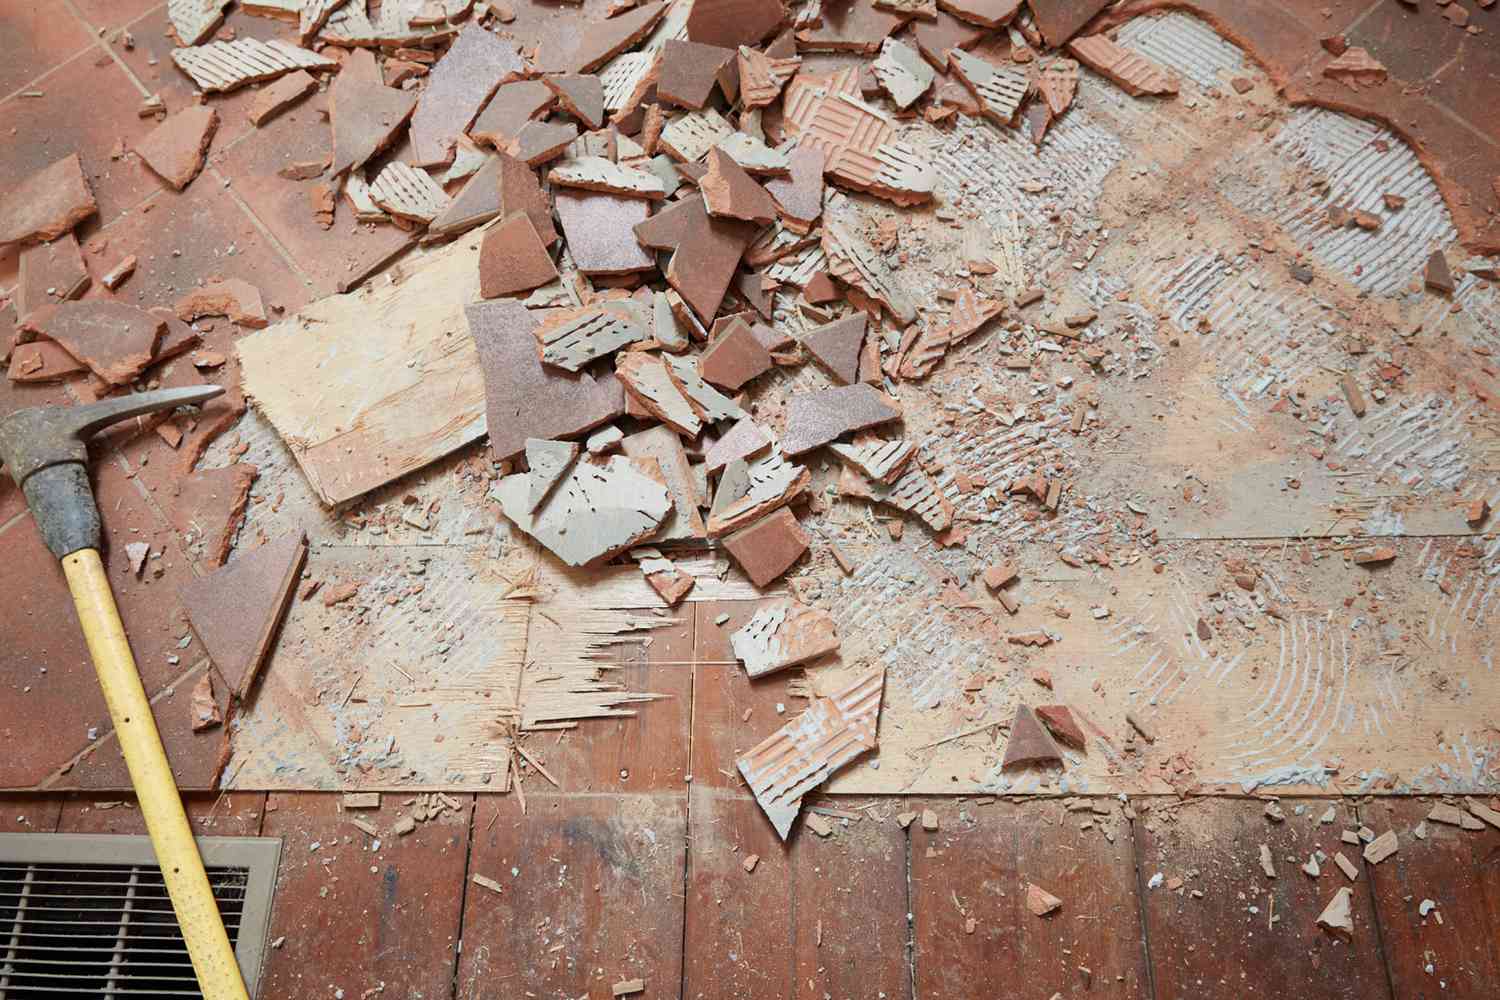 Bord du sol avec des carreaux de céramique bruns cassés en petits morceaux avec un ciseau à maçonnerie